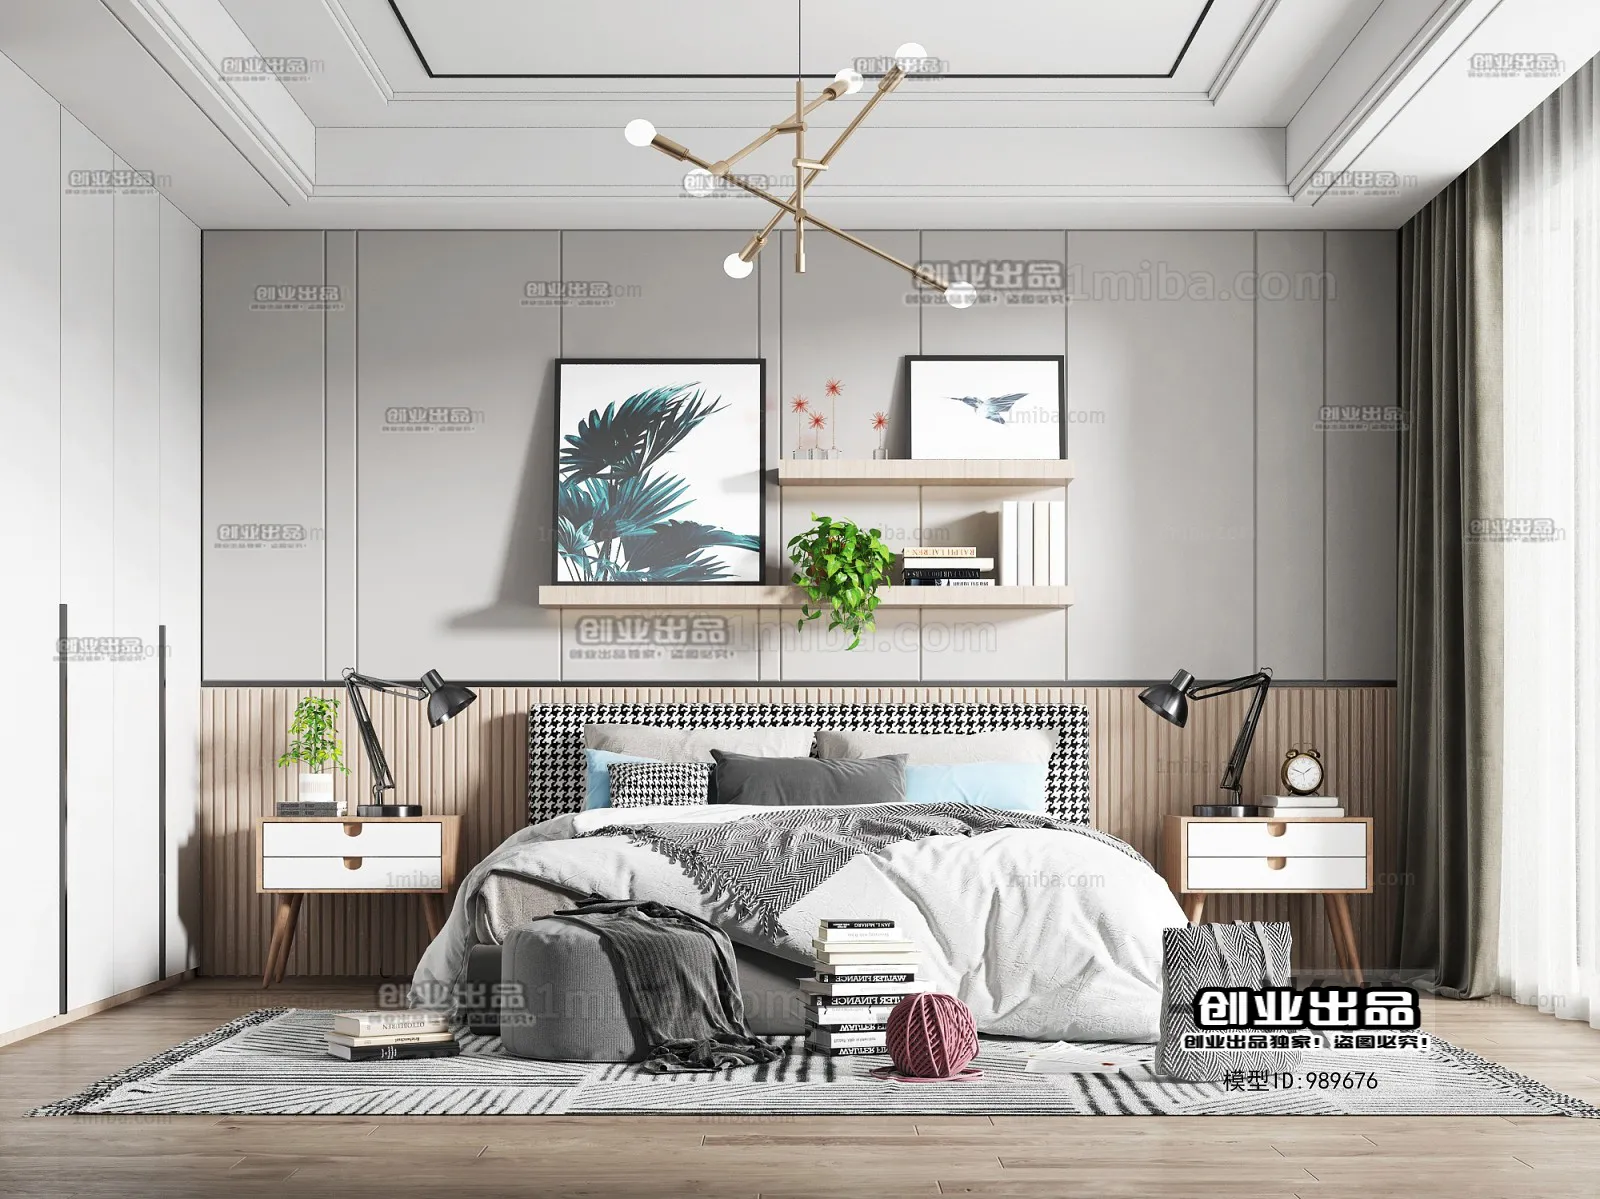 Bedroom – Scandinavian architecture – 029